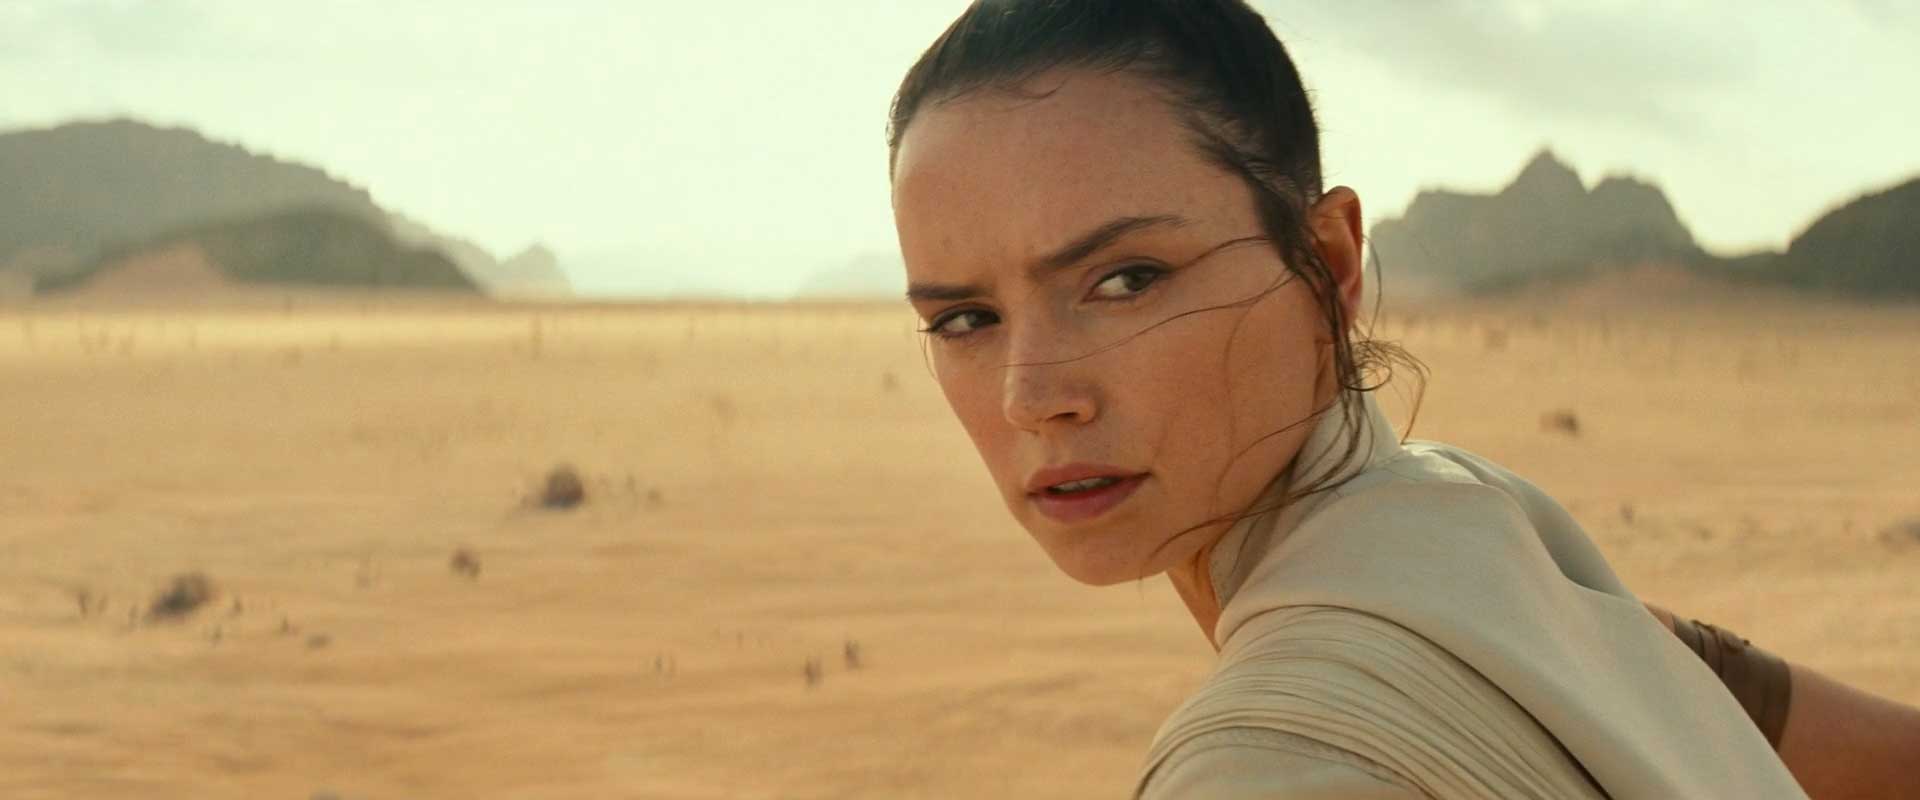 Star Wars Episode IX The Rise of Skywalker Teaser Rey Turn